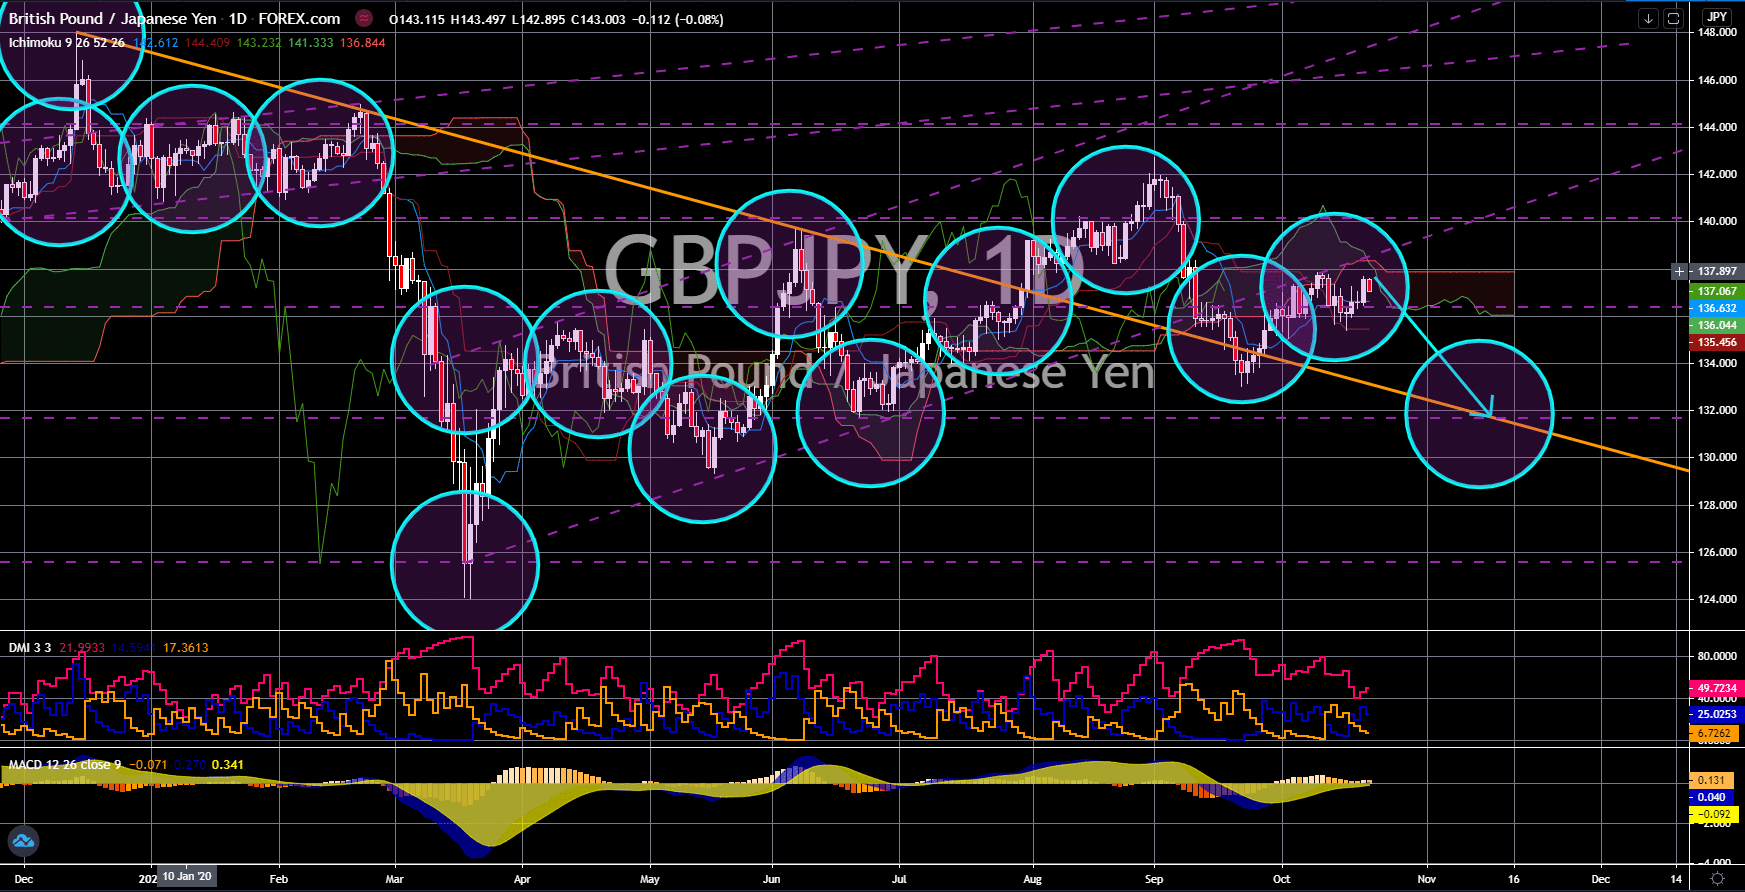 FinanceBrokerage - Notícias do Mercado: Gráfico GBP/JPY